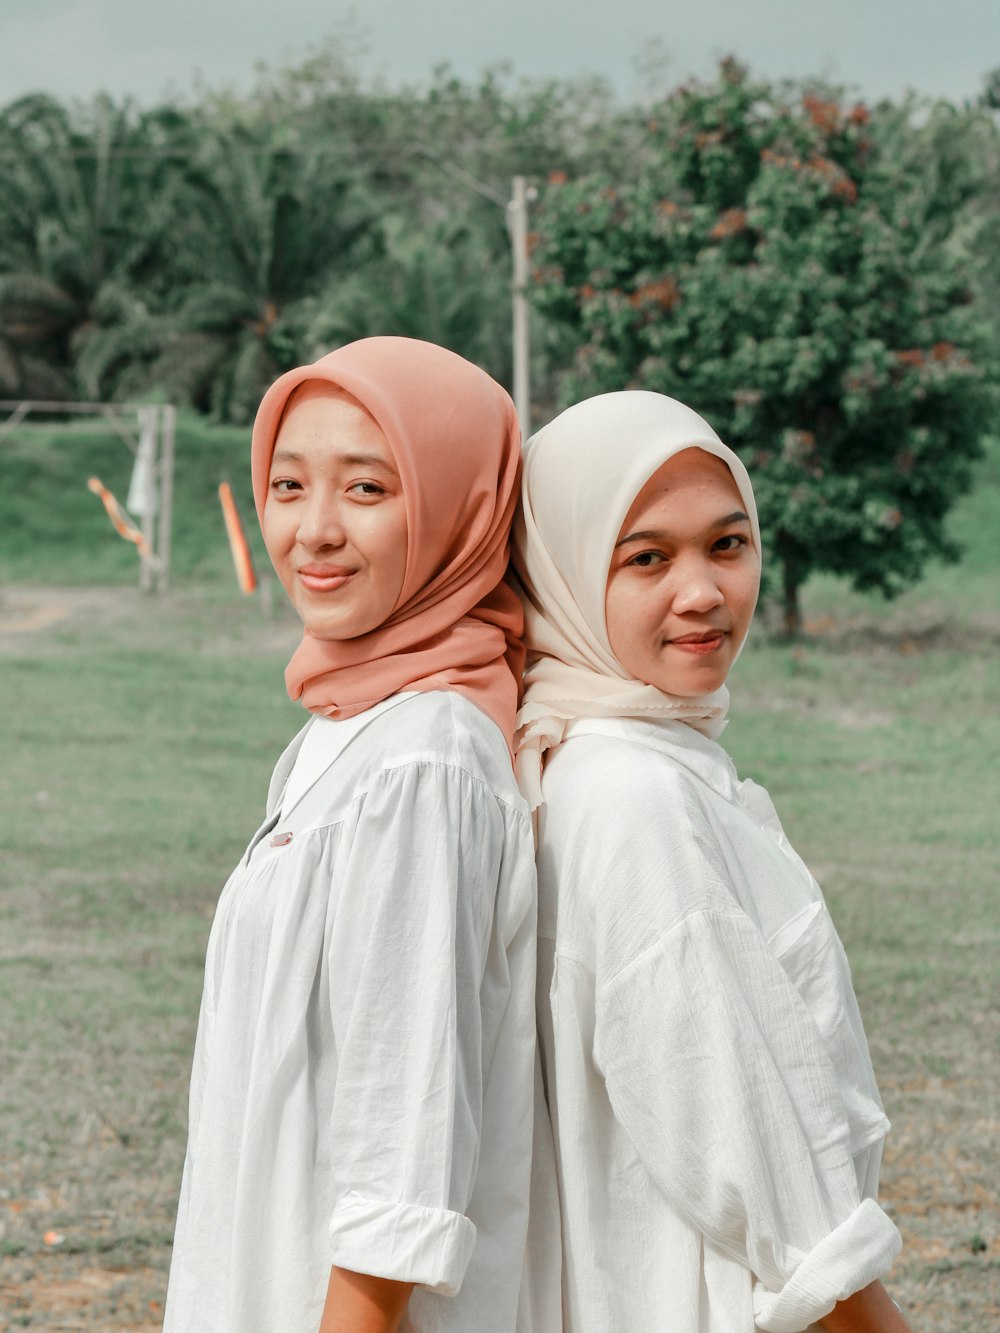 two women wearing headscarves standing in a field